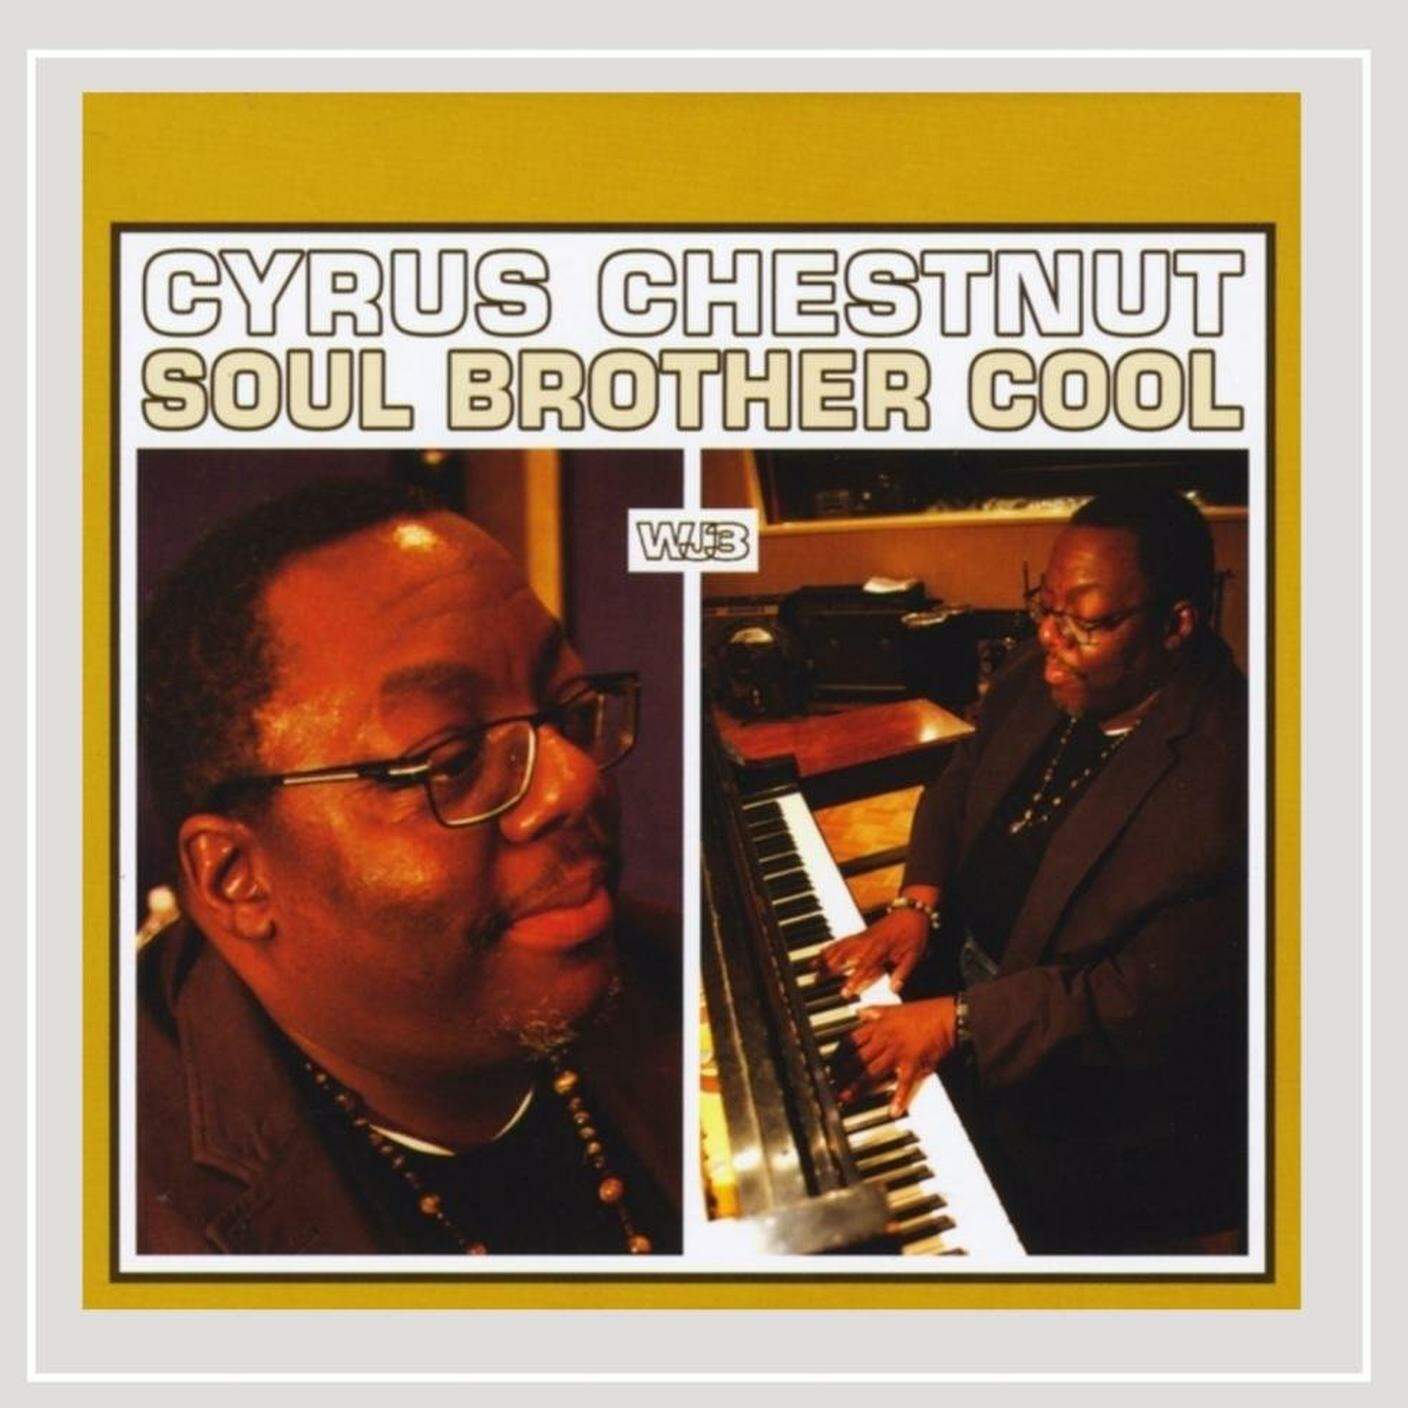 Cyrus Chestnut; "In search of a quiet place"; WJ3 (dettaglio copertina)